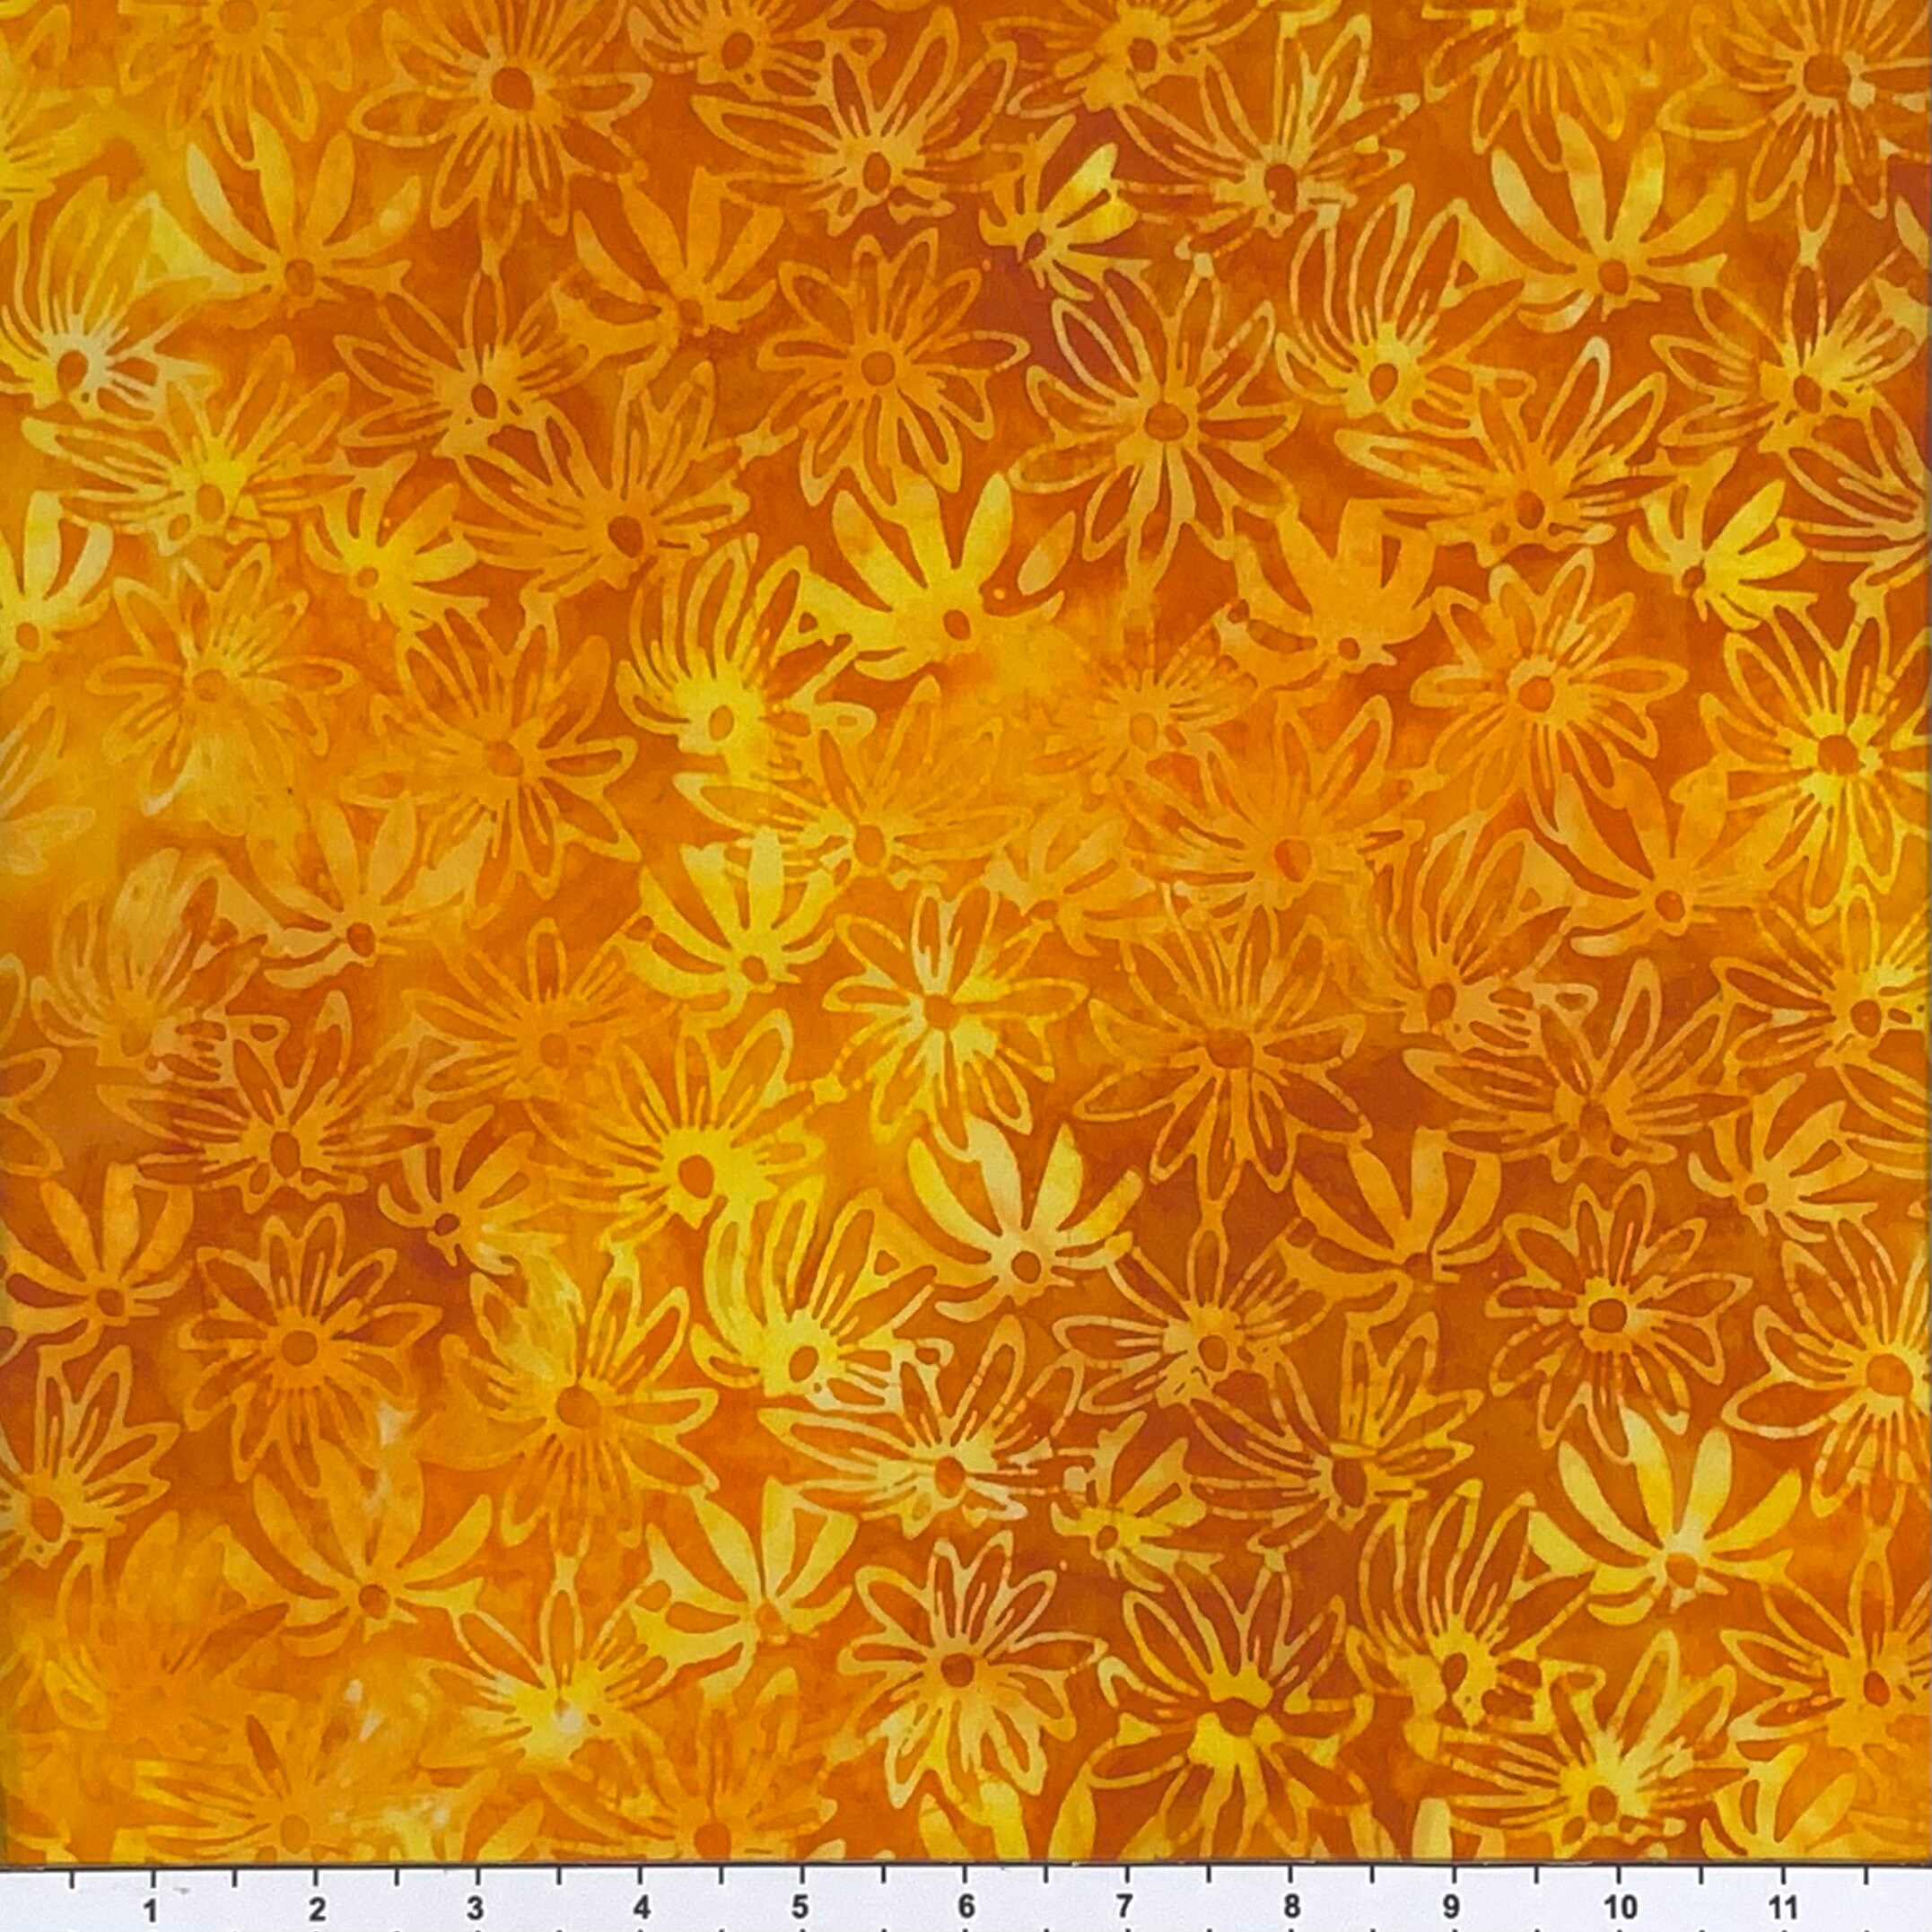 Batik Ab-1762-380 Orangeade là một họa tiết Batik độc đáo với sắc cam tươi sáng và những đường nét tinh tế. Xem hình ảnh để khám phá những đặc điểm của mẫu thiết kế này và cách sử dụng nó để tạo ra những sản phẩm thời trang tuyệt đẹp.